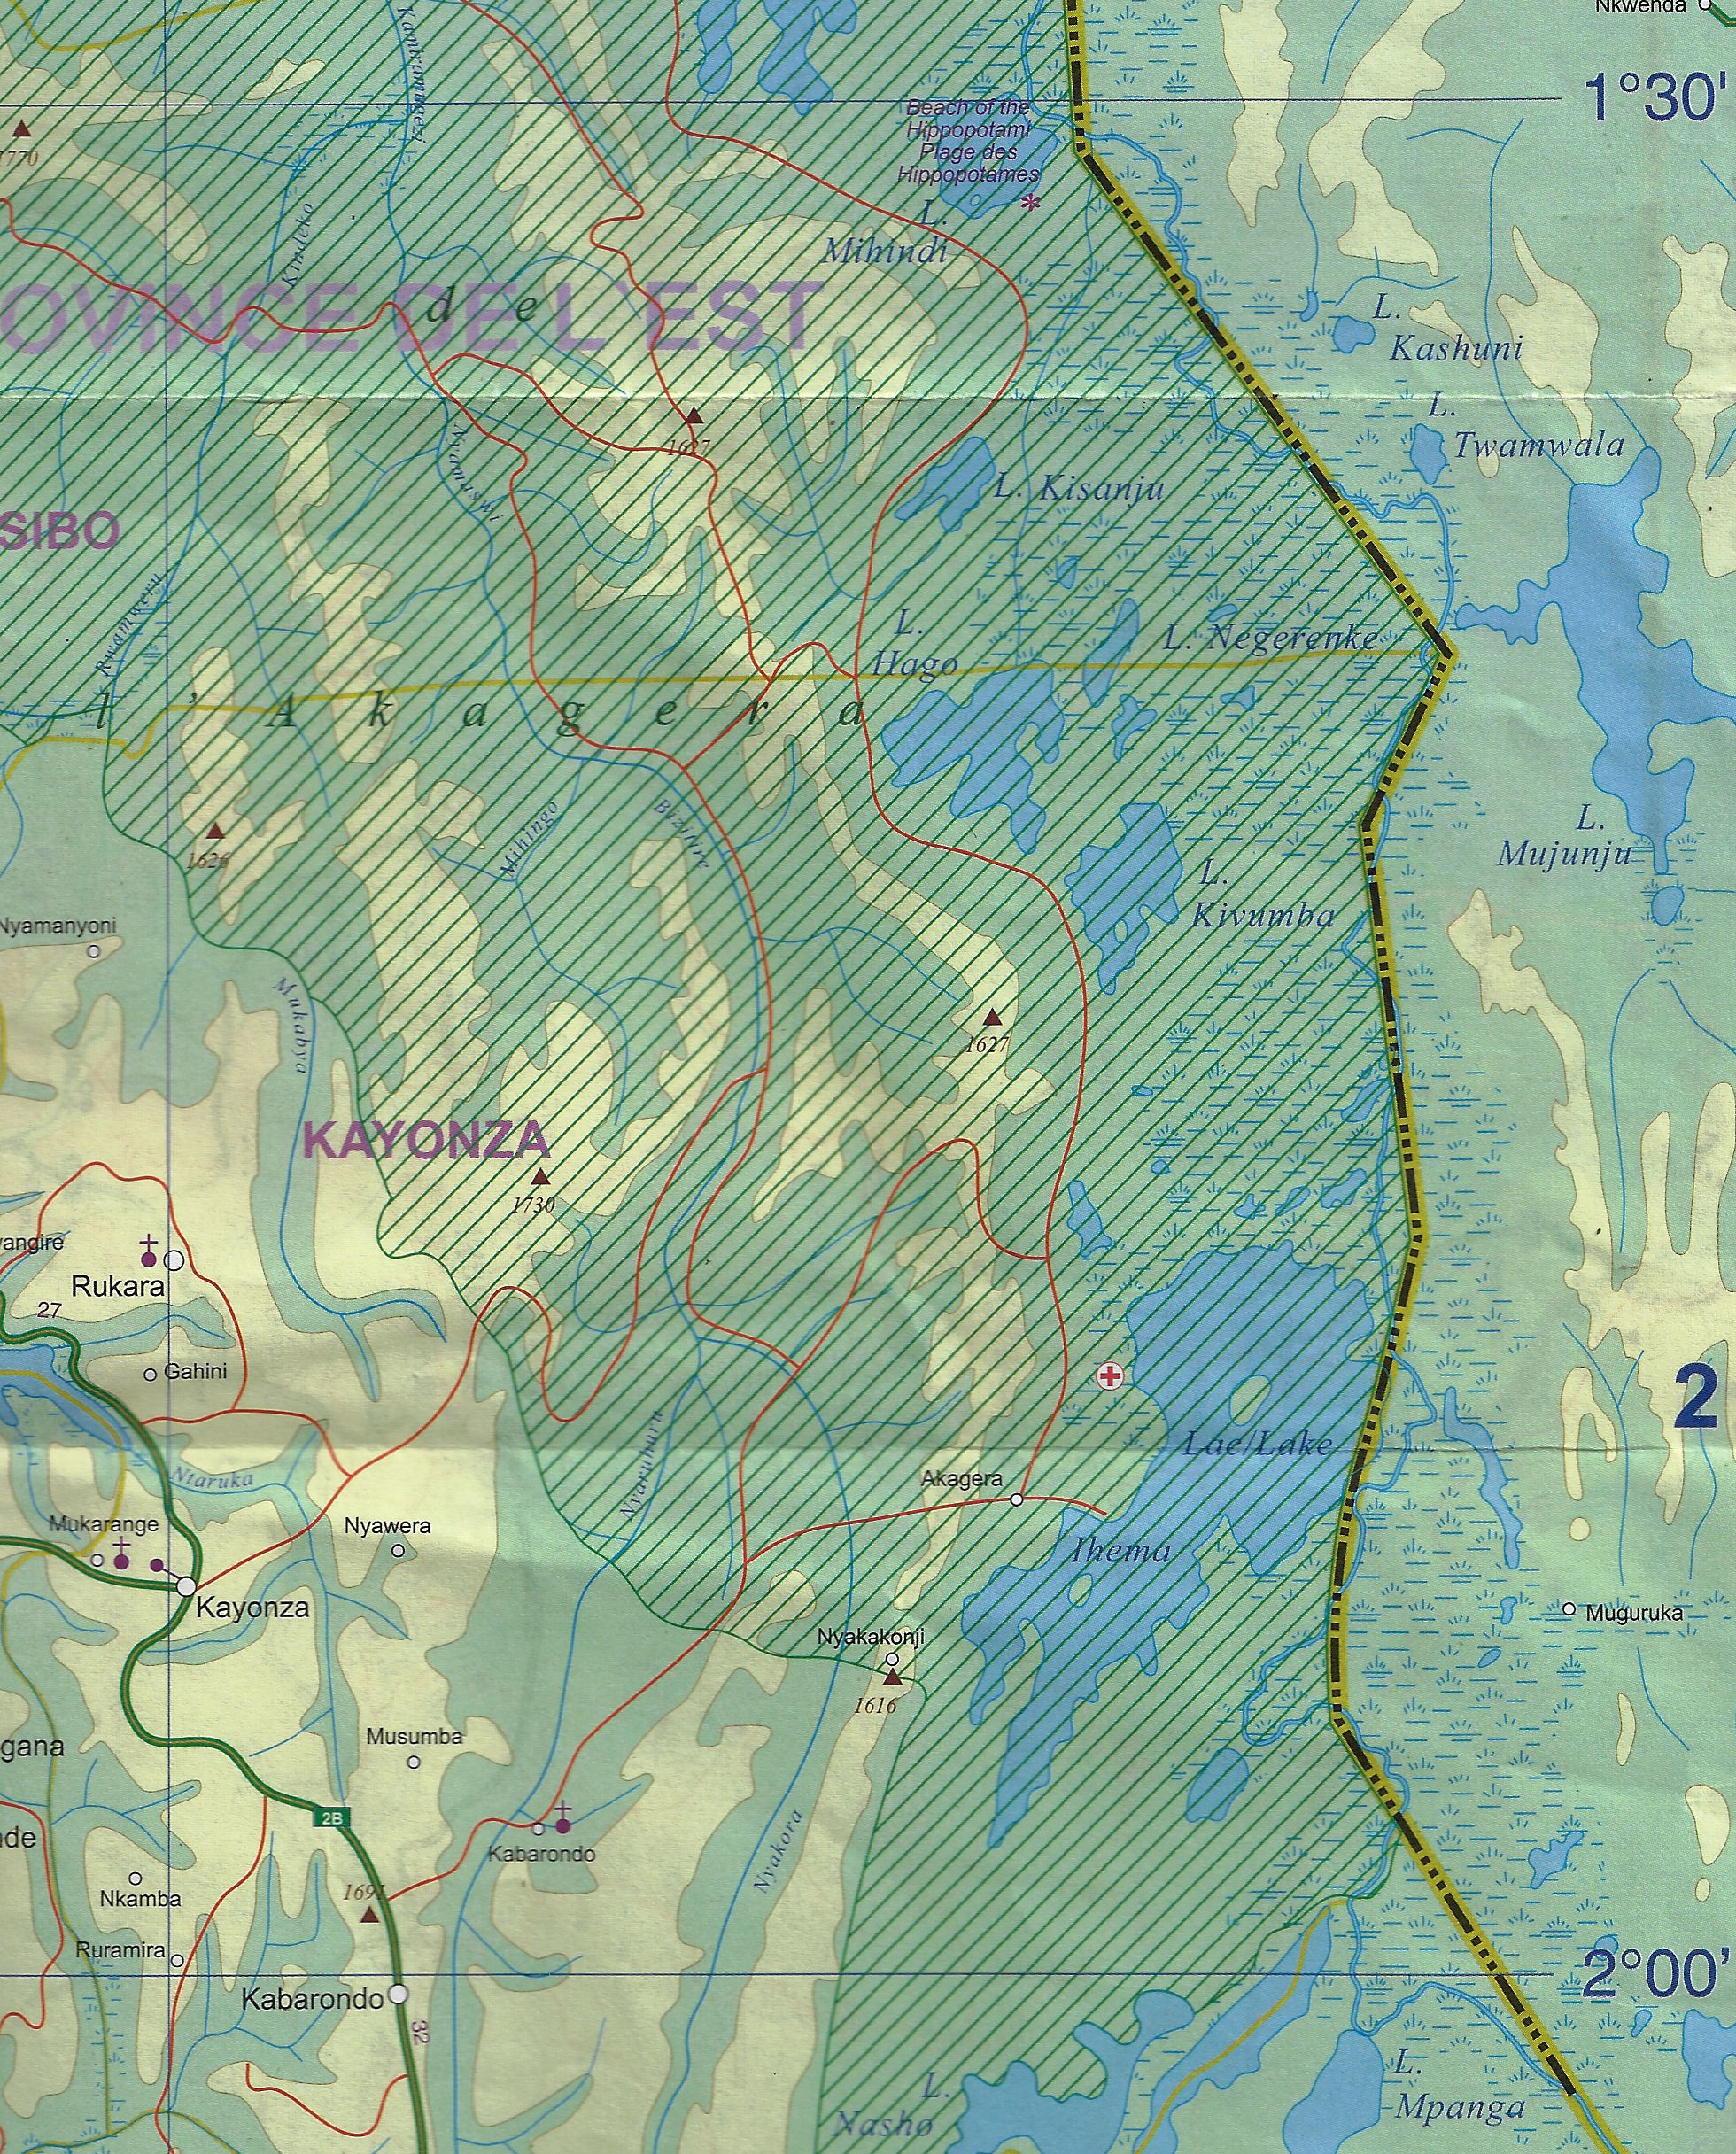 Carte du Rwanda échelle 1/300.000 E2